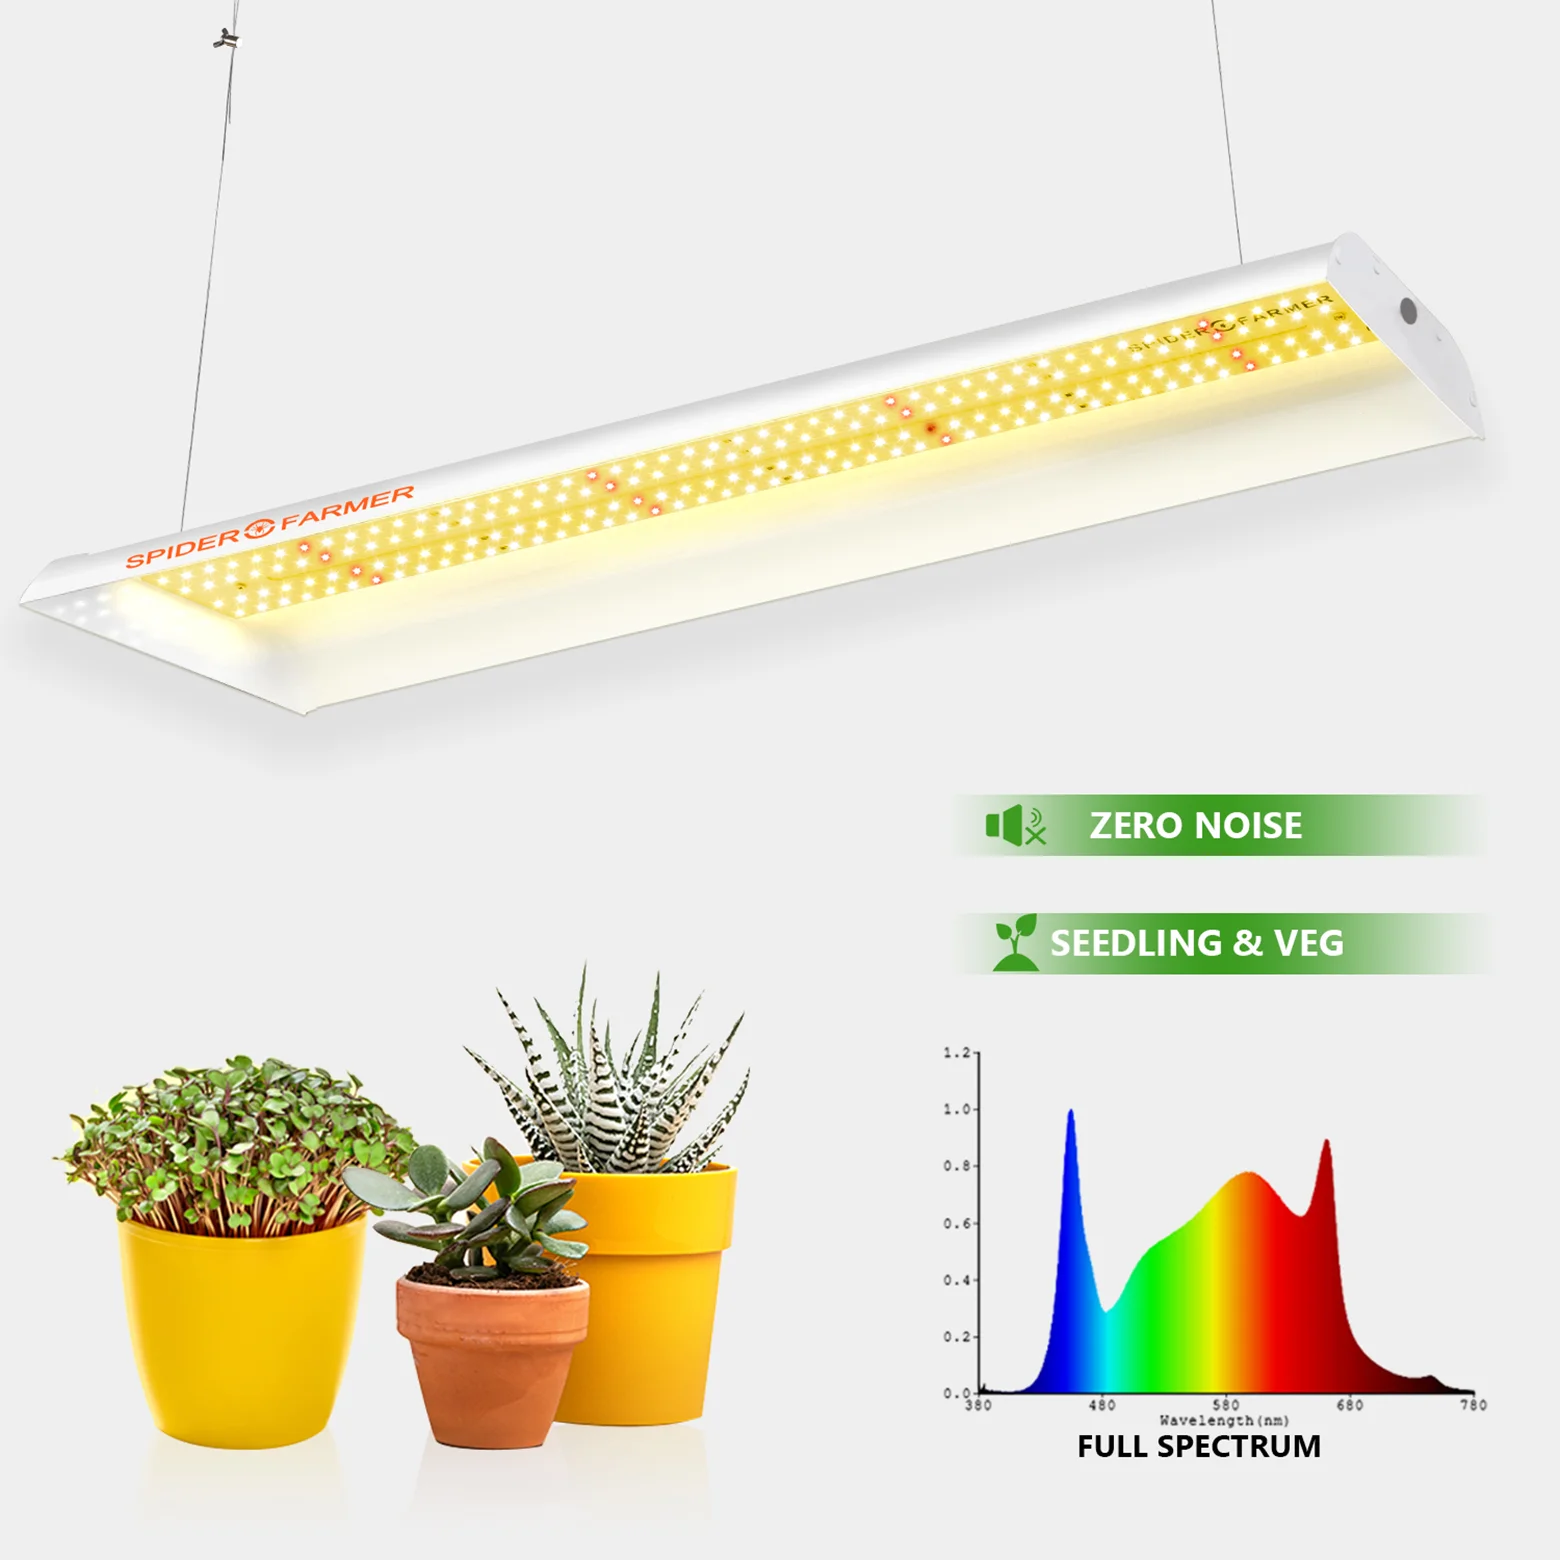 Spider Farmer SF300 33W LED Light Strip Sunlike Full Spectrum For Seedling Veg Flower Plants Indoor Hydroponics